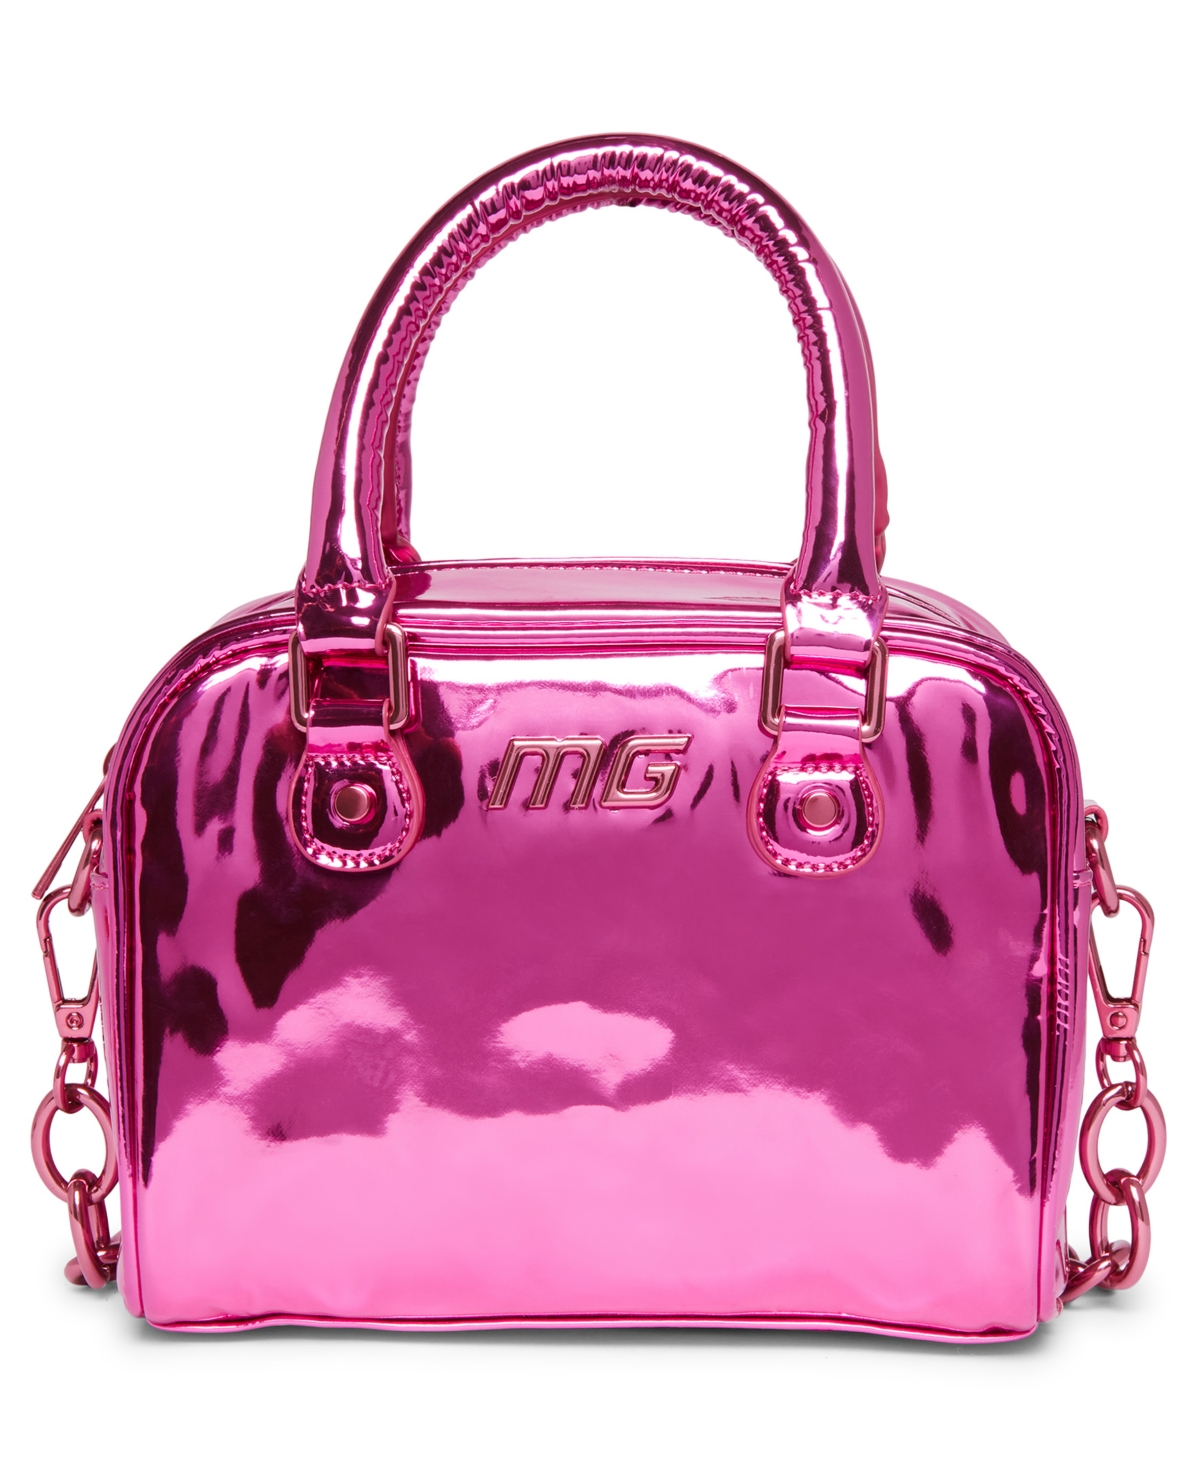 Madden Girl Simone Bowler Bag In Metallic Pink